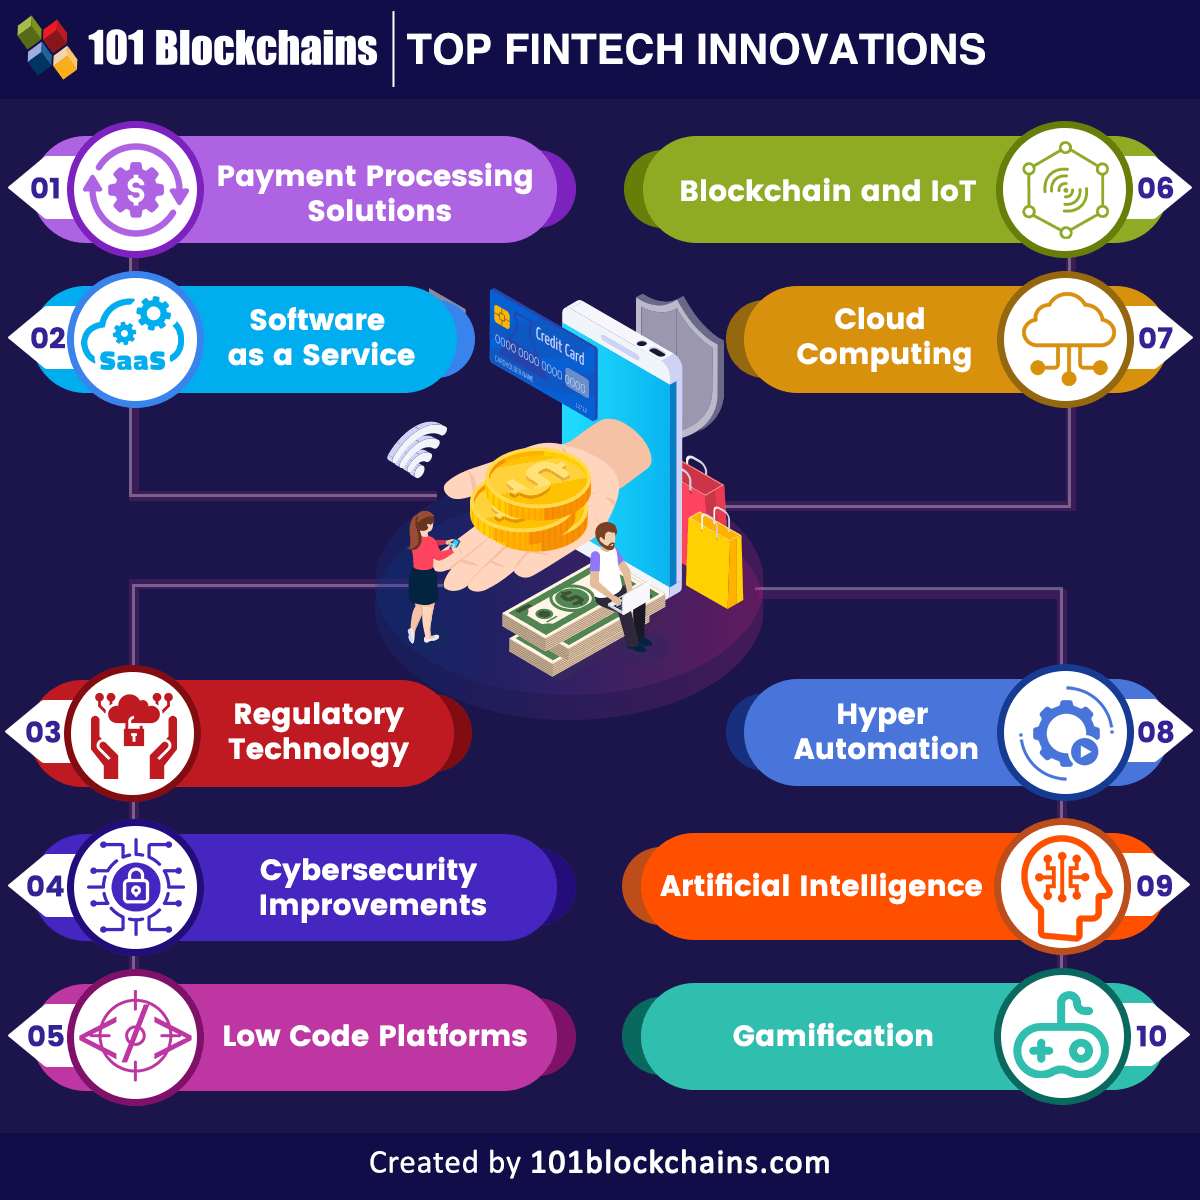 Top Fintech Innovations